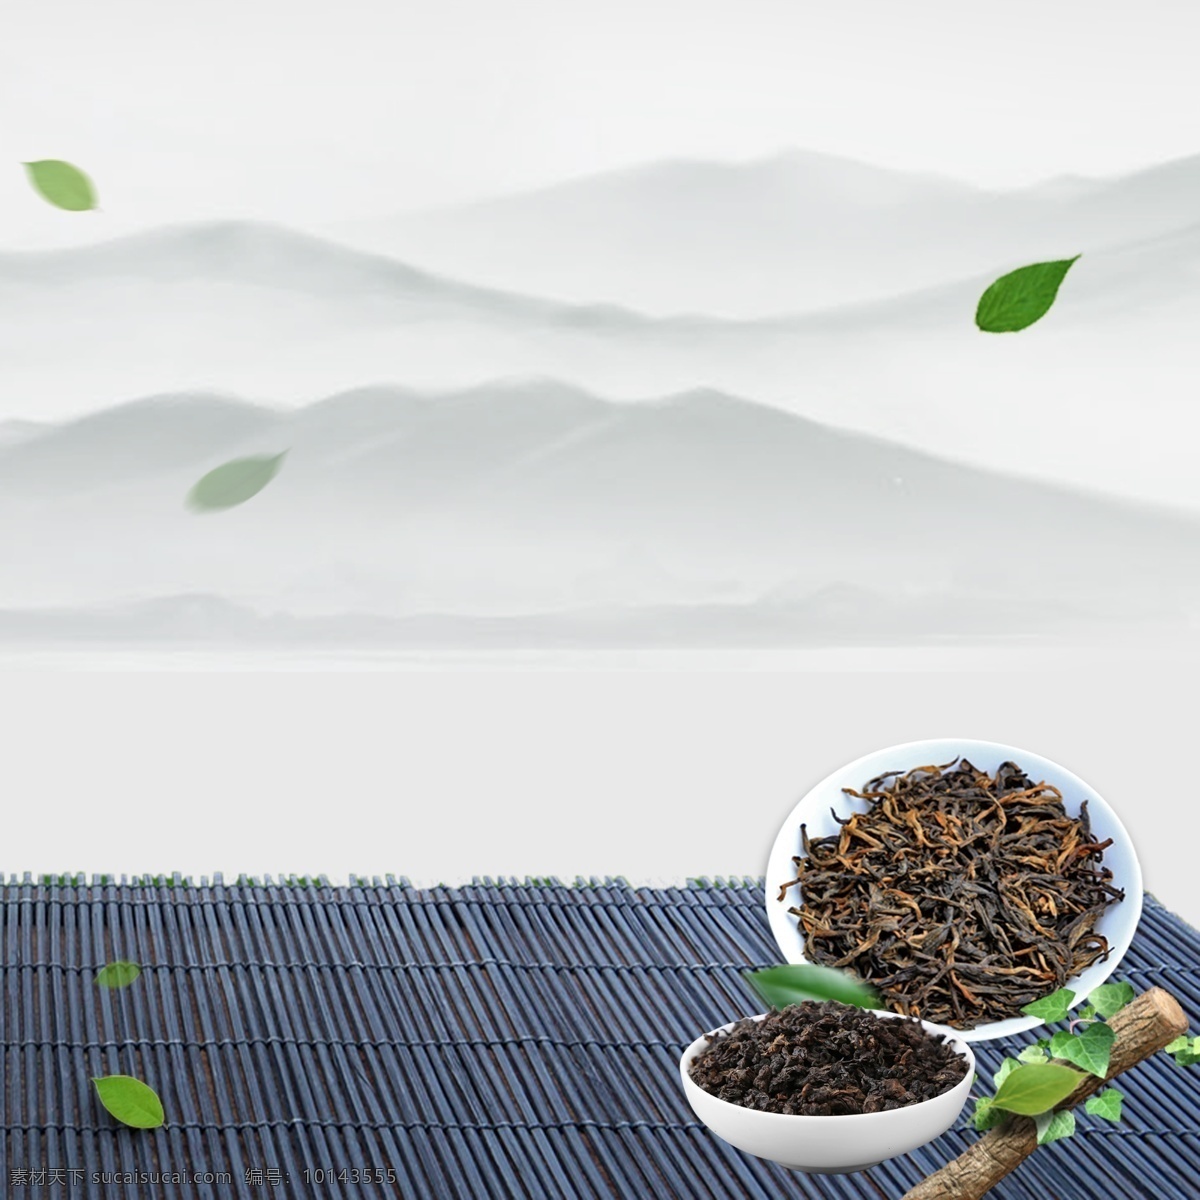 中国 风 绿色 清新 茶叶 主 图 主图模板 中国风 自然 纯天然 开春茶 中秋促销茶叶 国庆促销茶叶